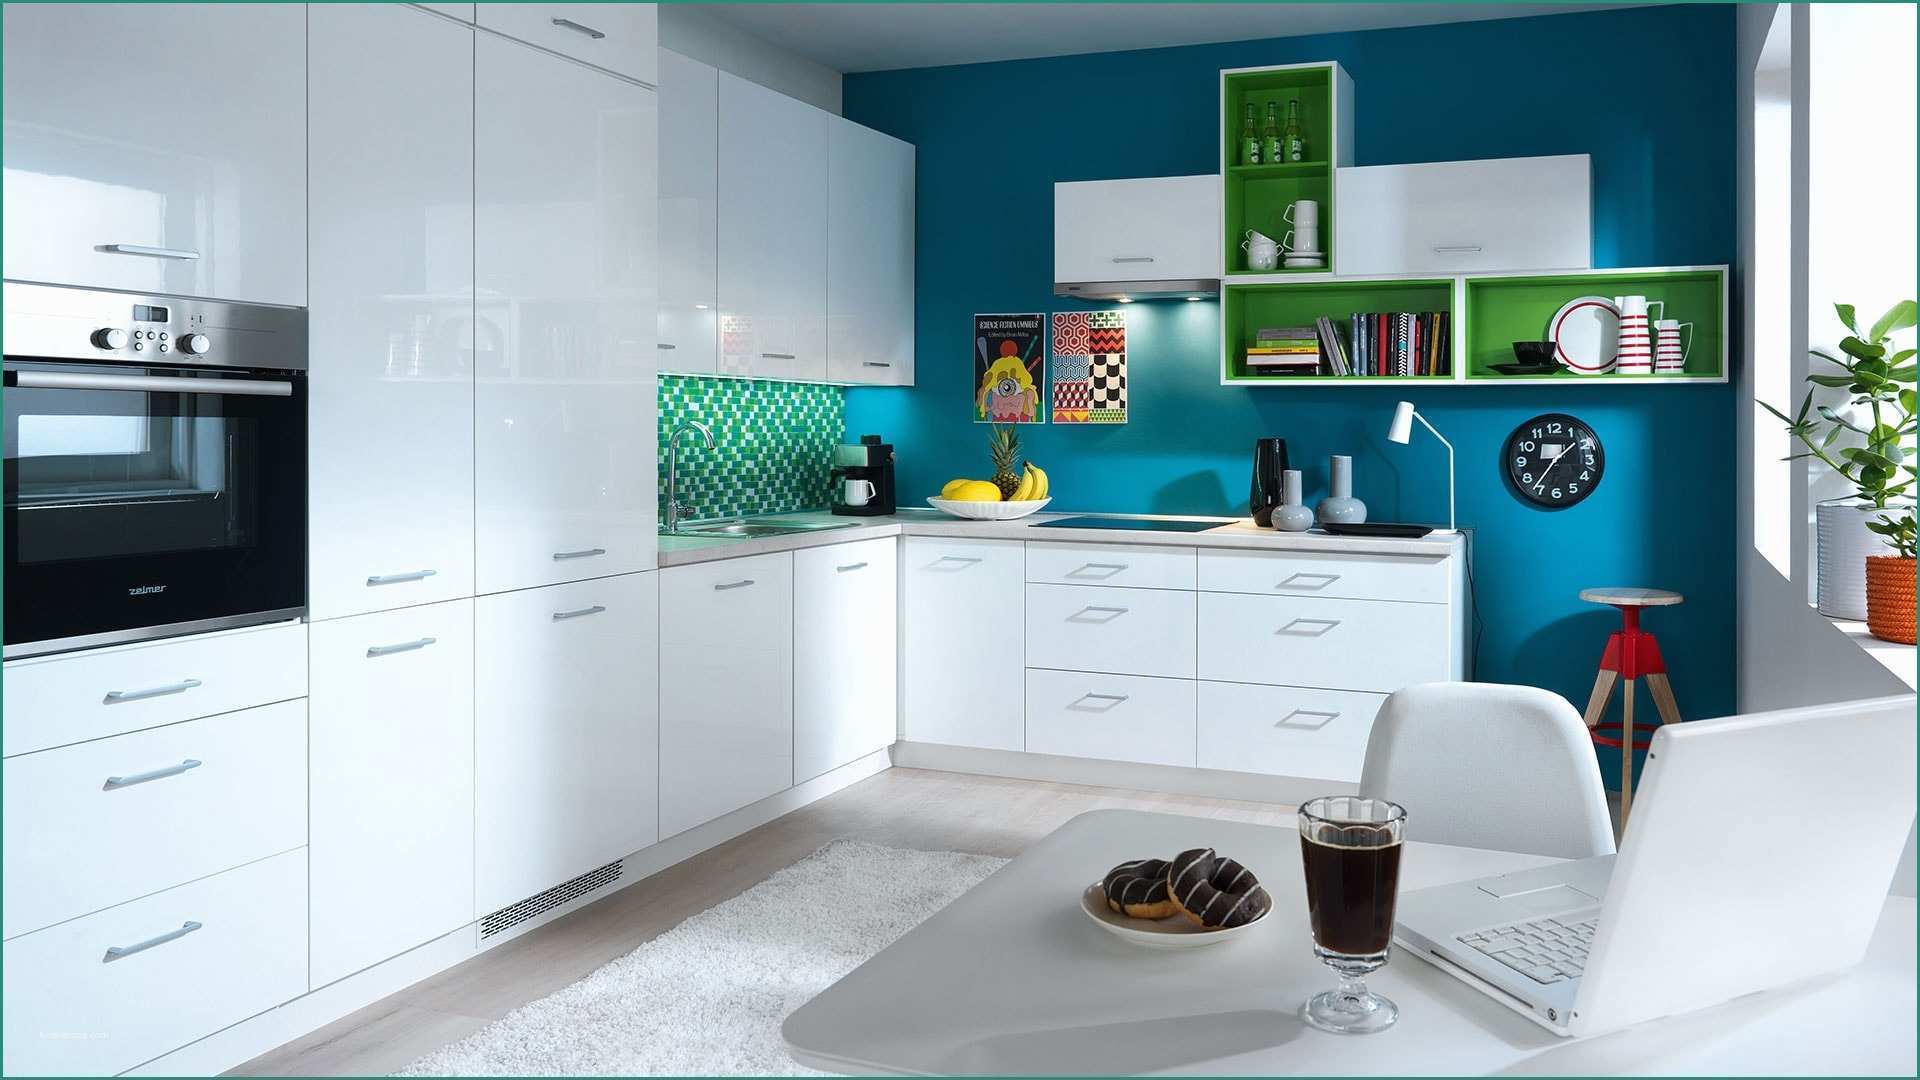 Cucina Scavolini Liberamente E Küche Creme Modern Küchenidee Für Kleine Küche Unterfenster Armatur